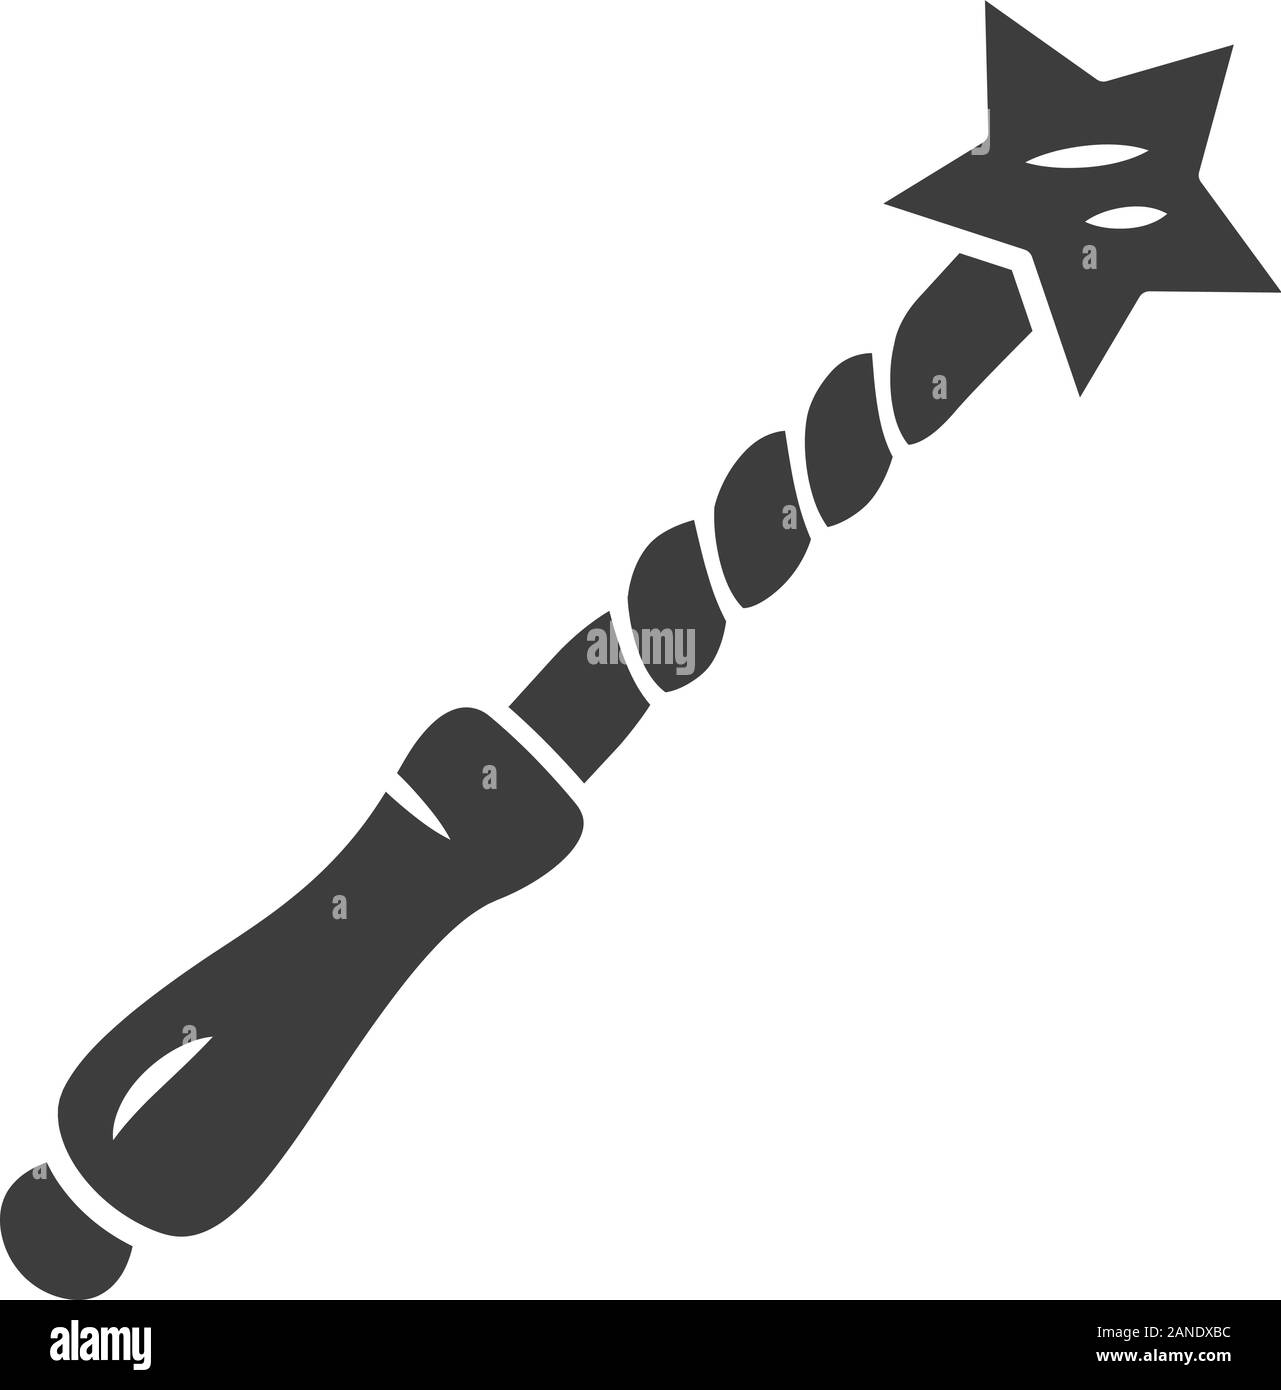 La bacchetta della strega icona glyph. Simbolo di Silhouette. Wizard Magic wand, fata bastone di legno. Mago stregone voce. La stregoneria & Sorcery Halloween strumento magico. Illustrazione Vettoriale